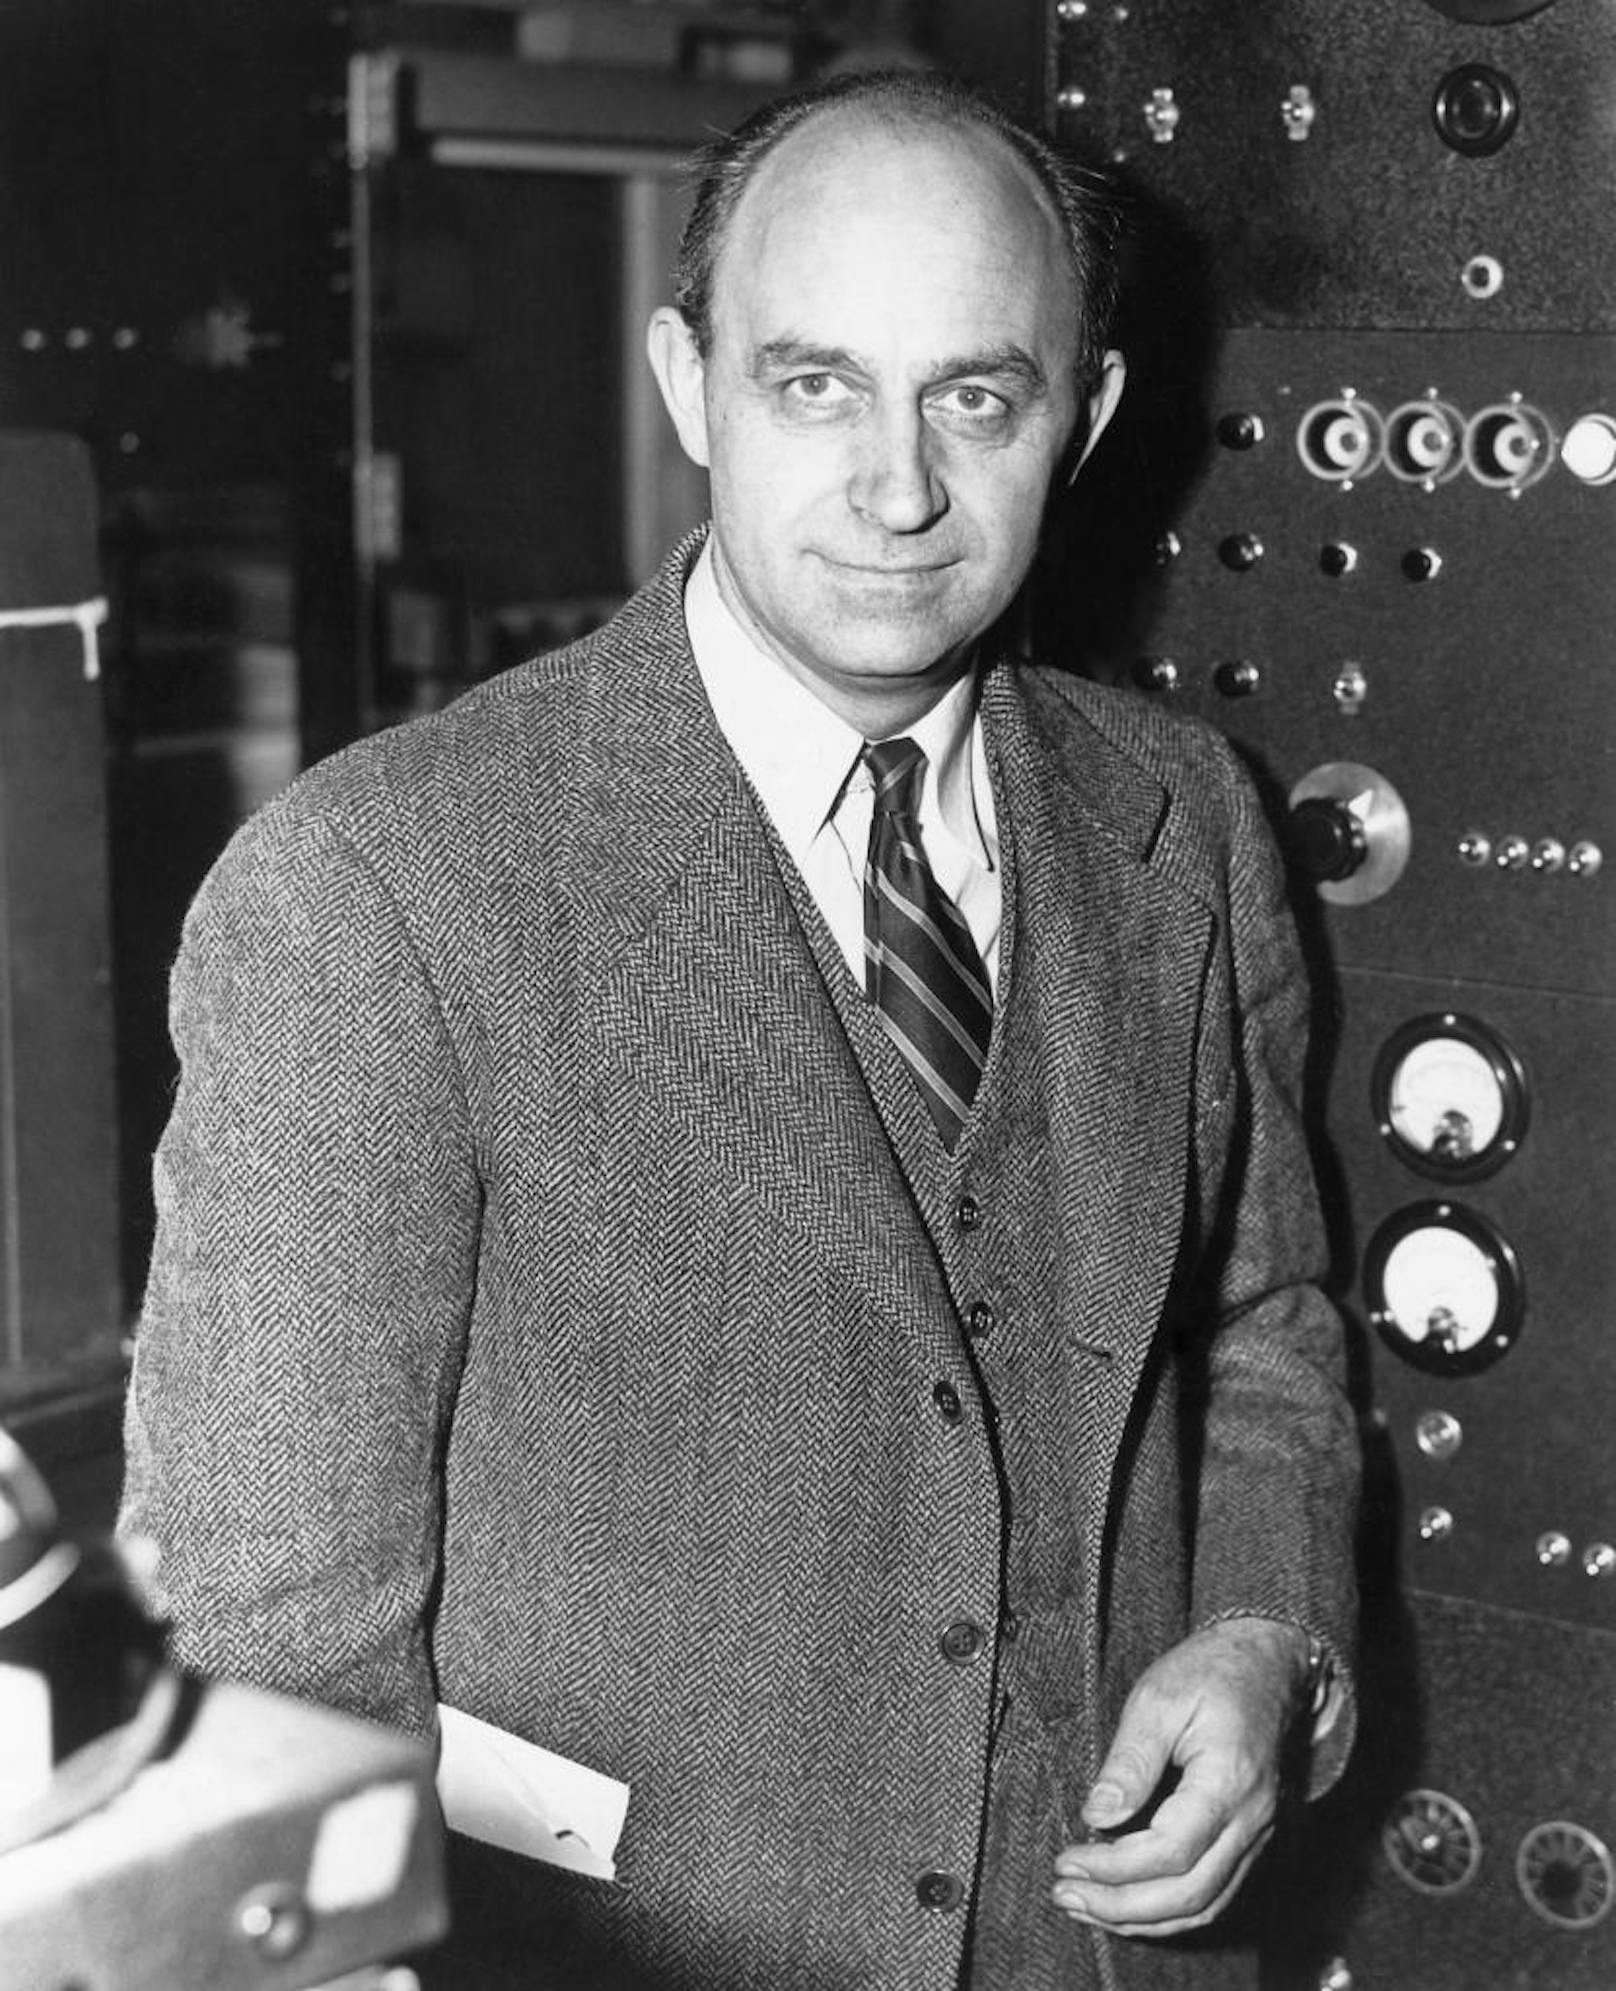 Enrico Fermi gilt als einer der bedeutendsten Kernphysiker der Geschichte. Doch auch bedeutende Kernphysiker können sich irren. 